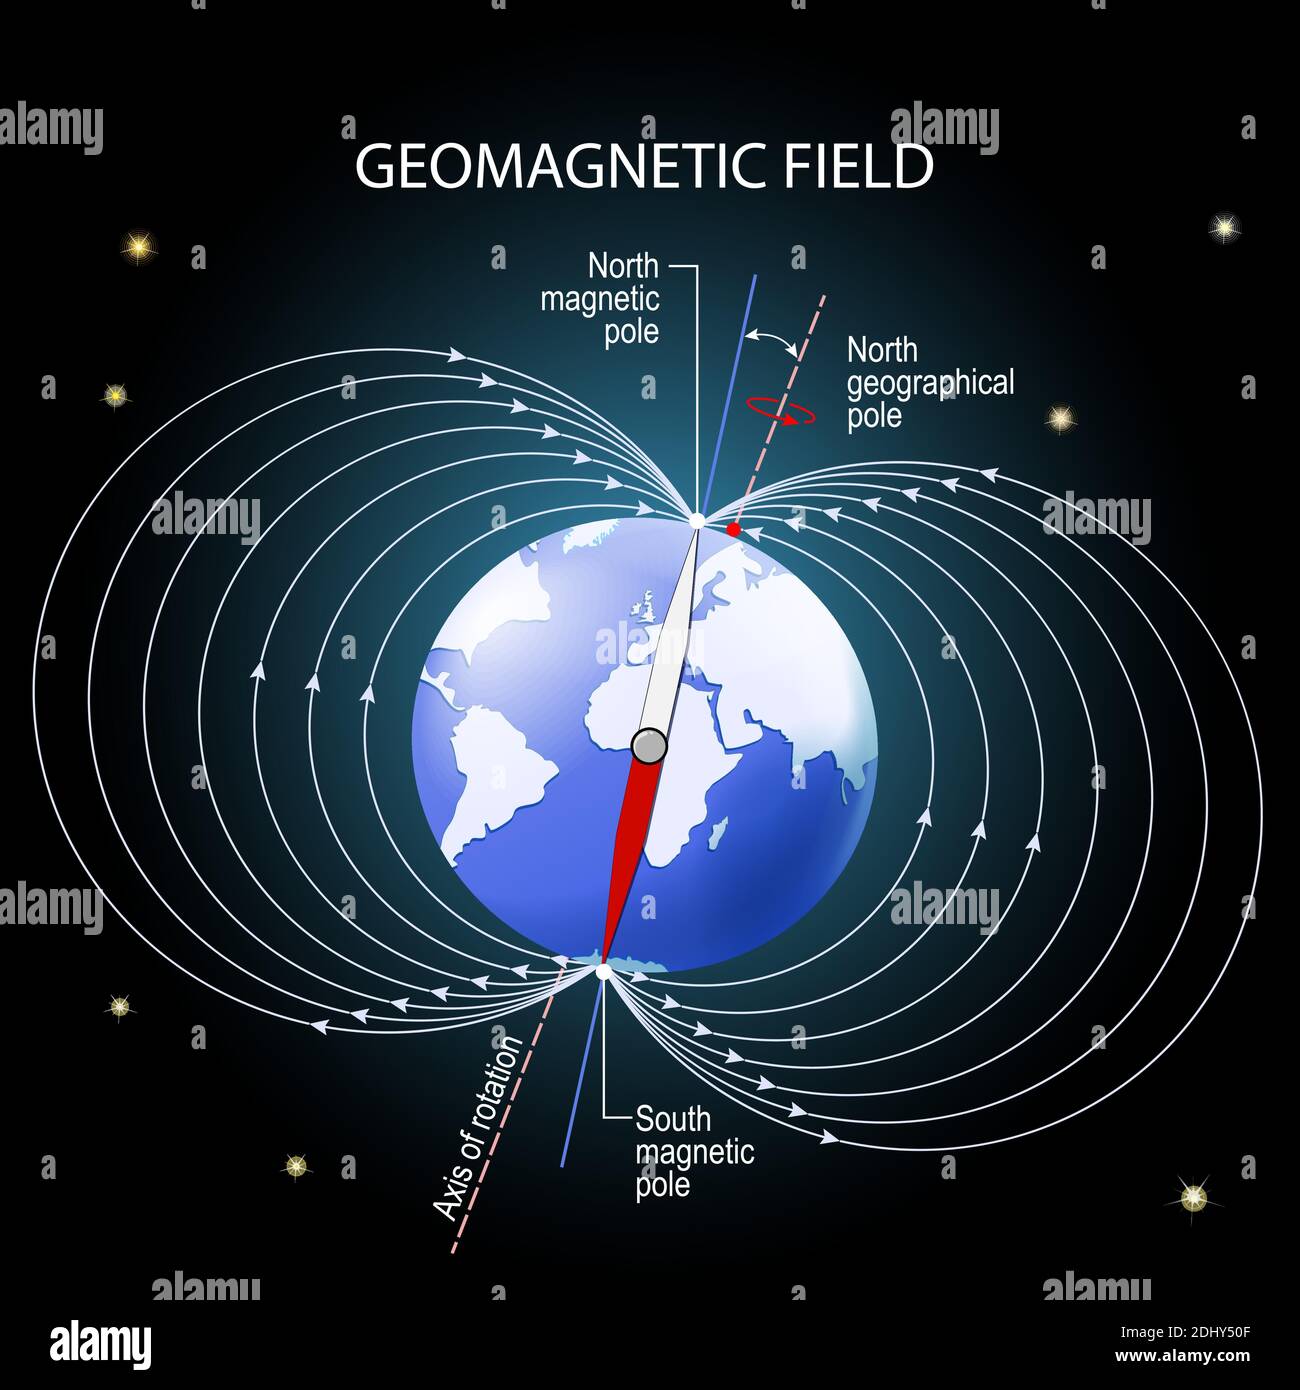 Champ magnétique ou géomagnétique de la Terre. Représentation géographique et magnétique des pôles nord et sud, de l'axe magnétique et de l'axe de rotation Illustration de Vecteur